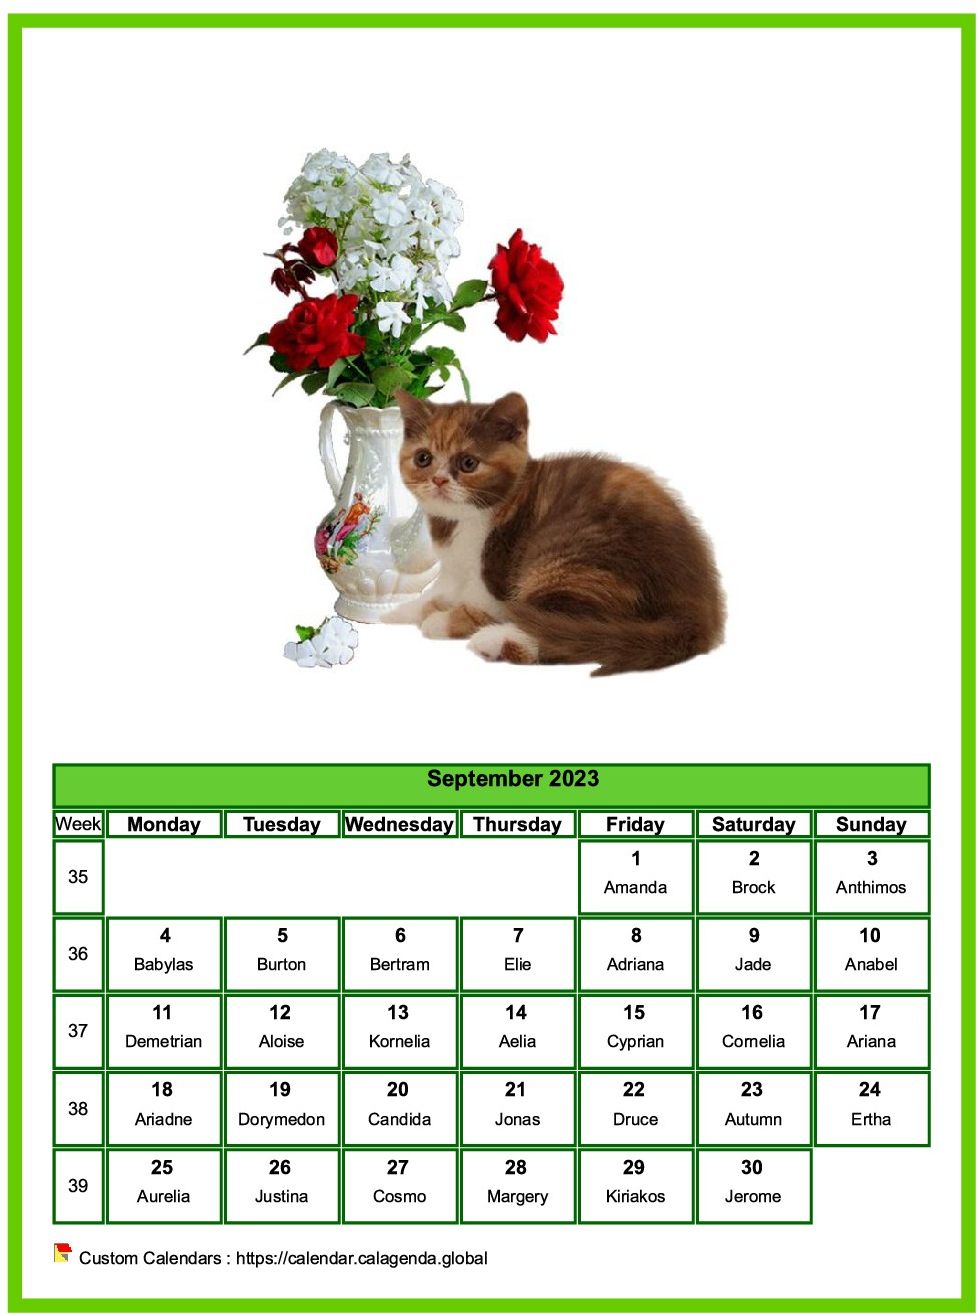 Calendar September 2023 cats